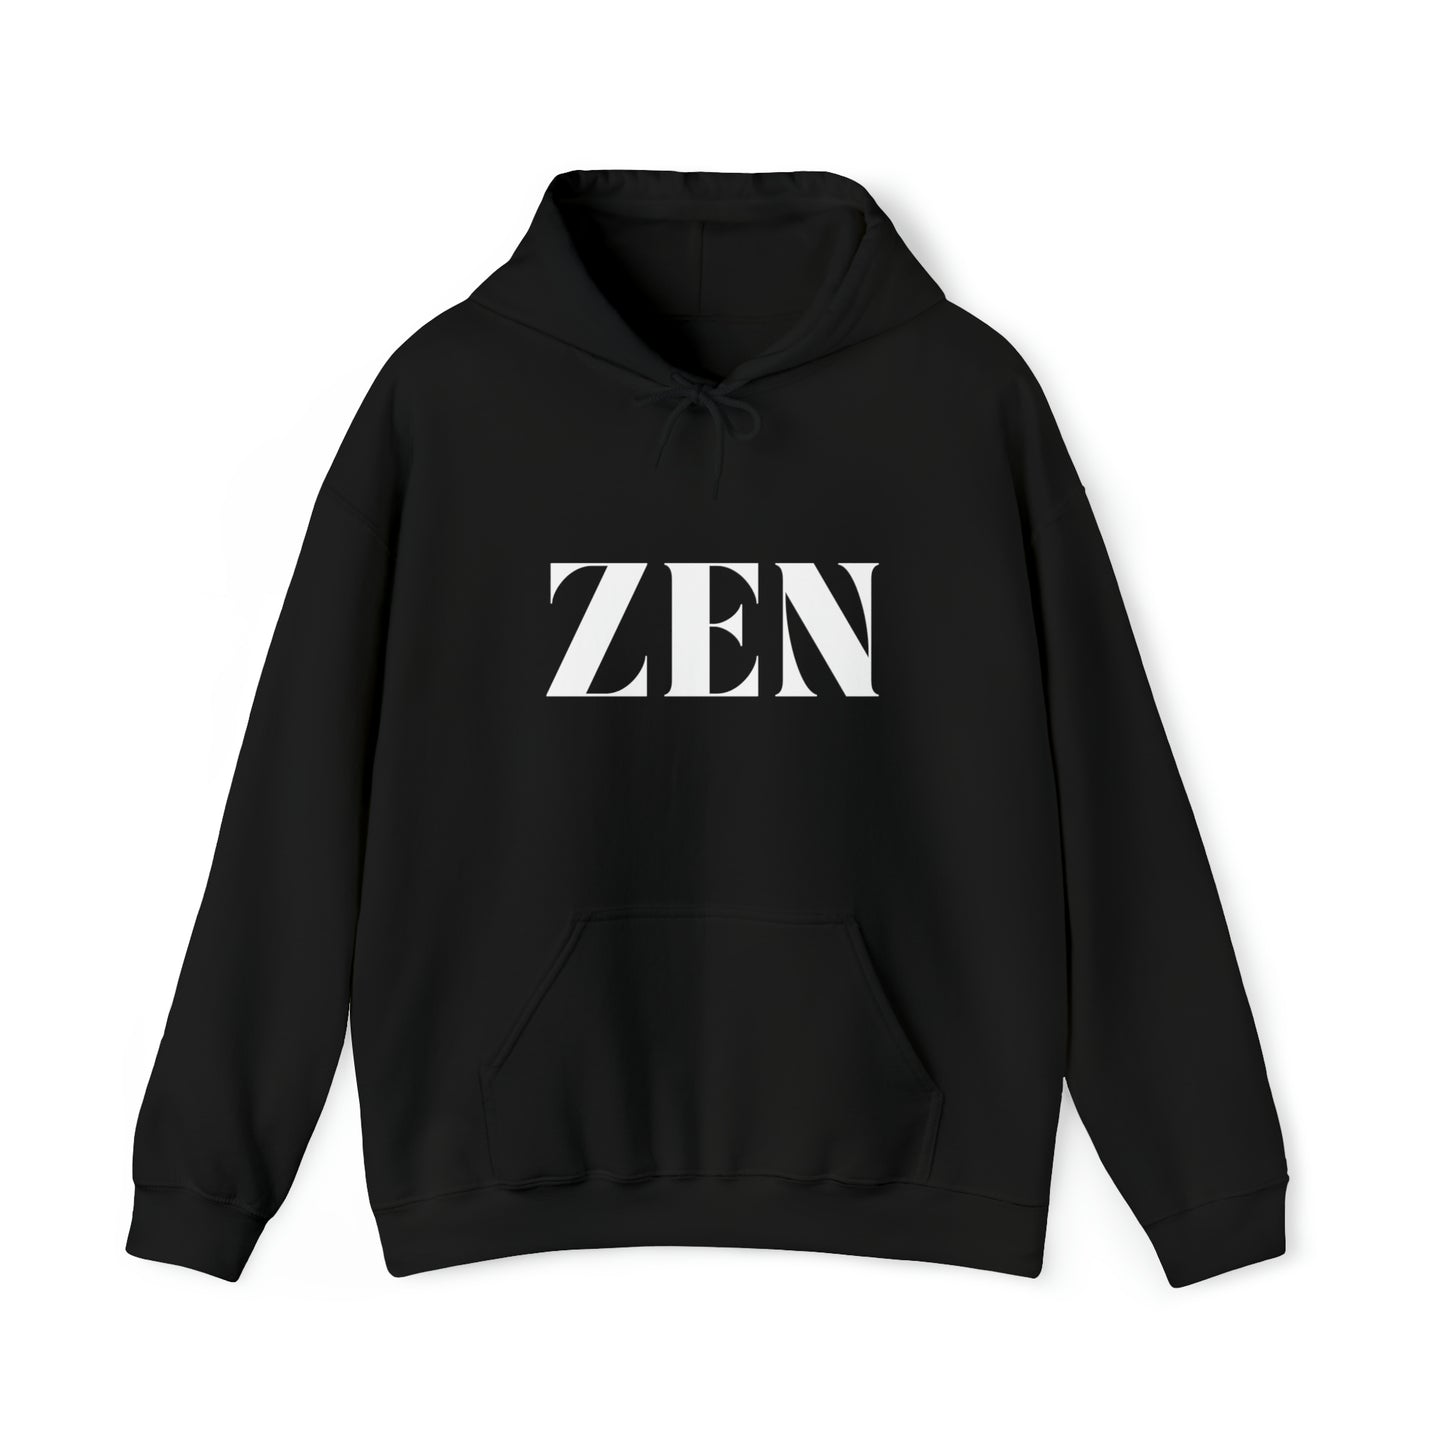 S Black Zen Hoodie from HoodySZN.com